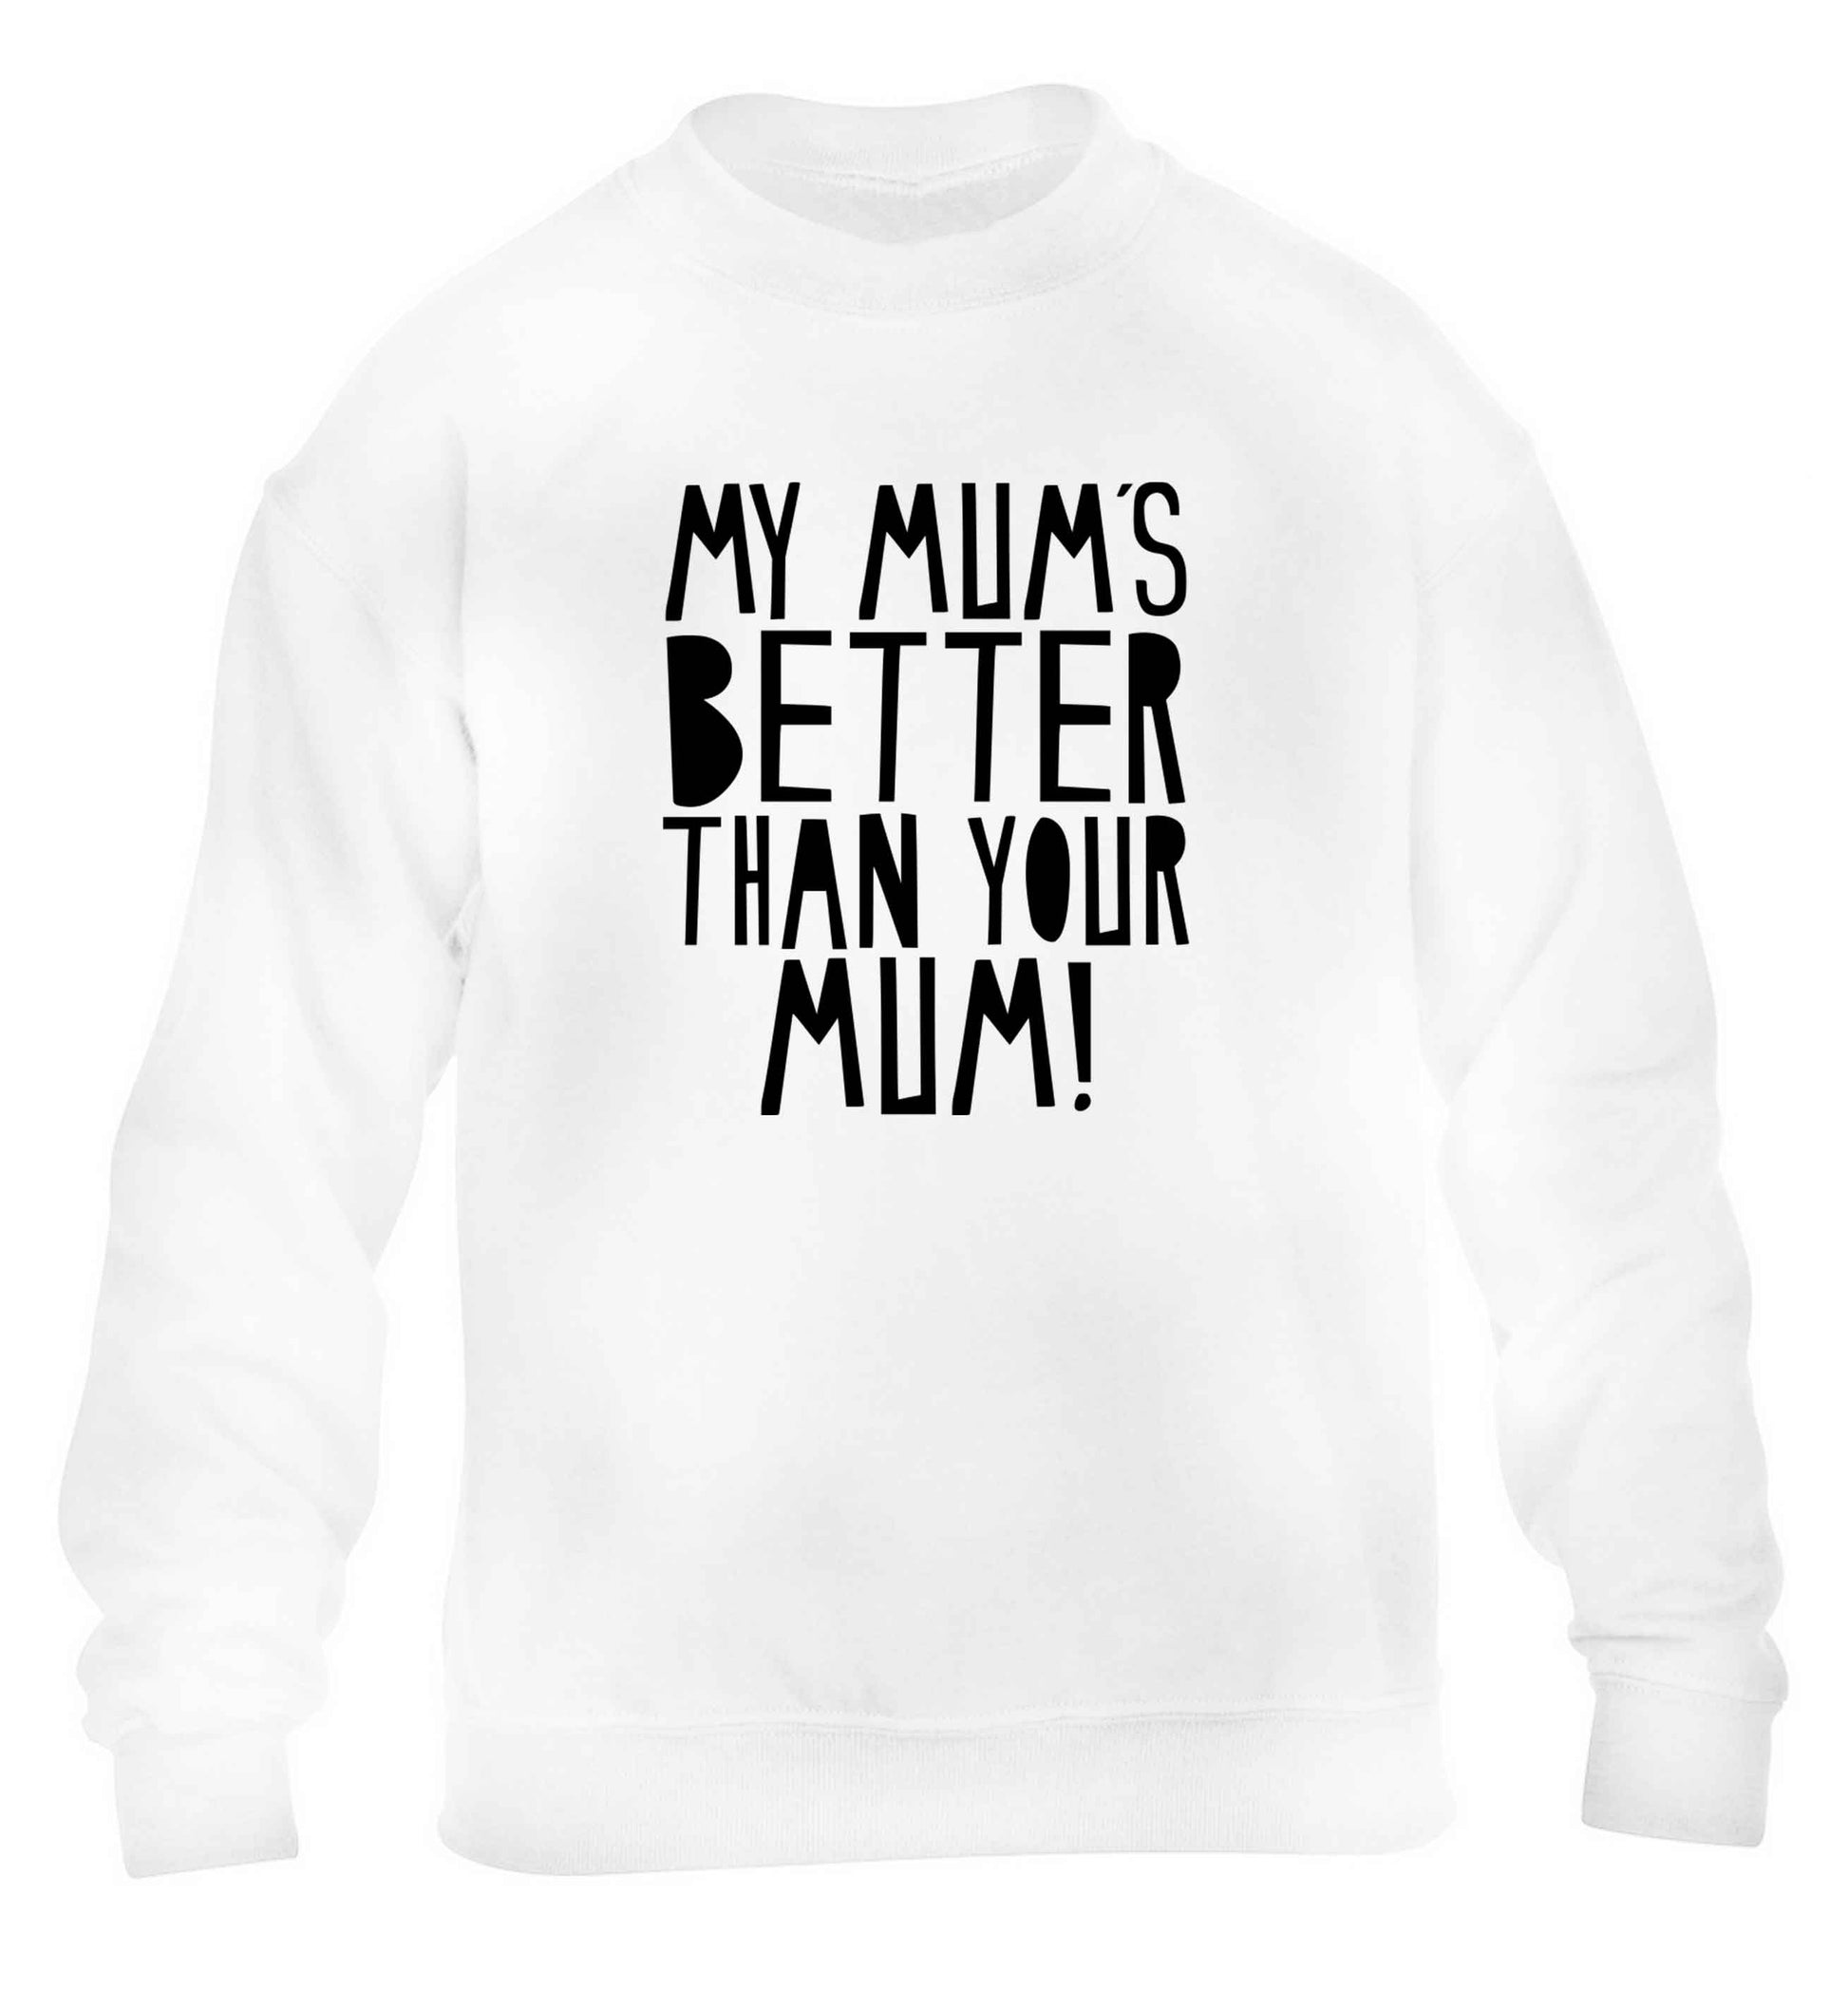 My mum's better than your mum children's white sweater 12-13 Years